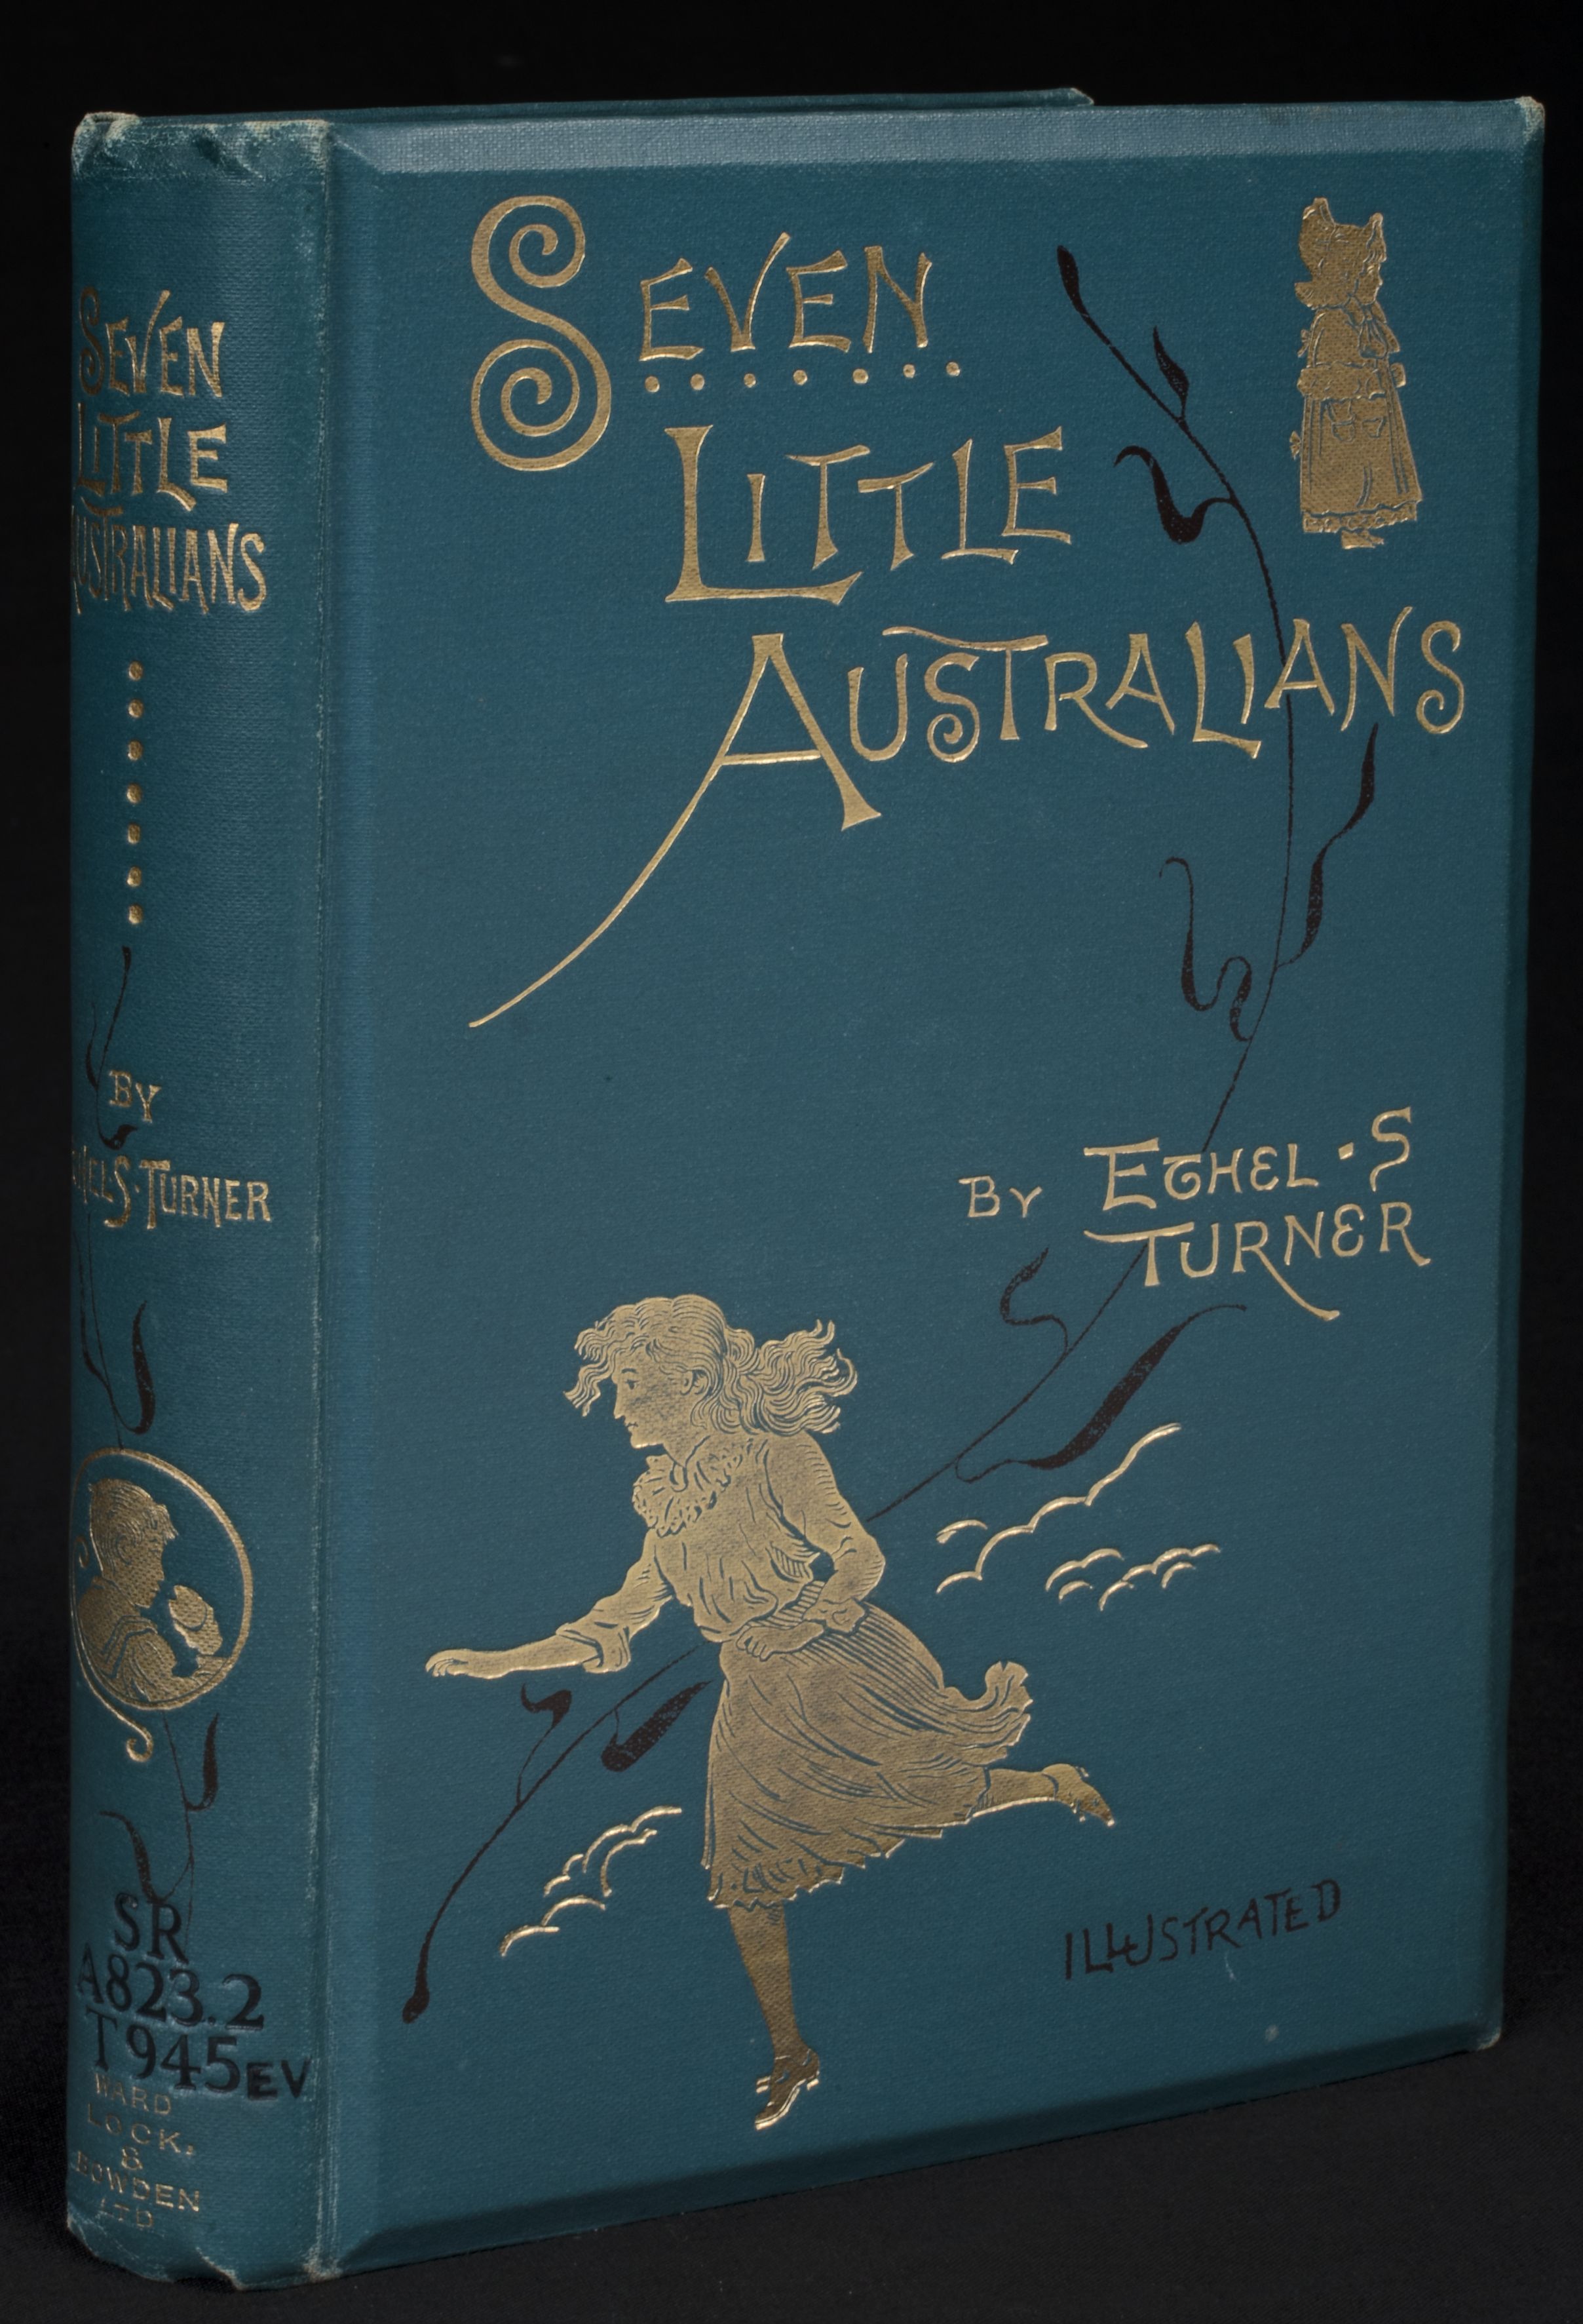 Ethel Turner's Seven Little Australians | National Library of Australia